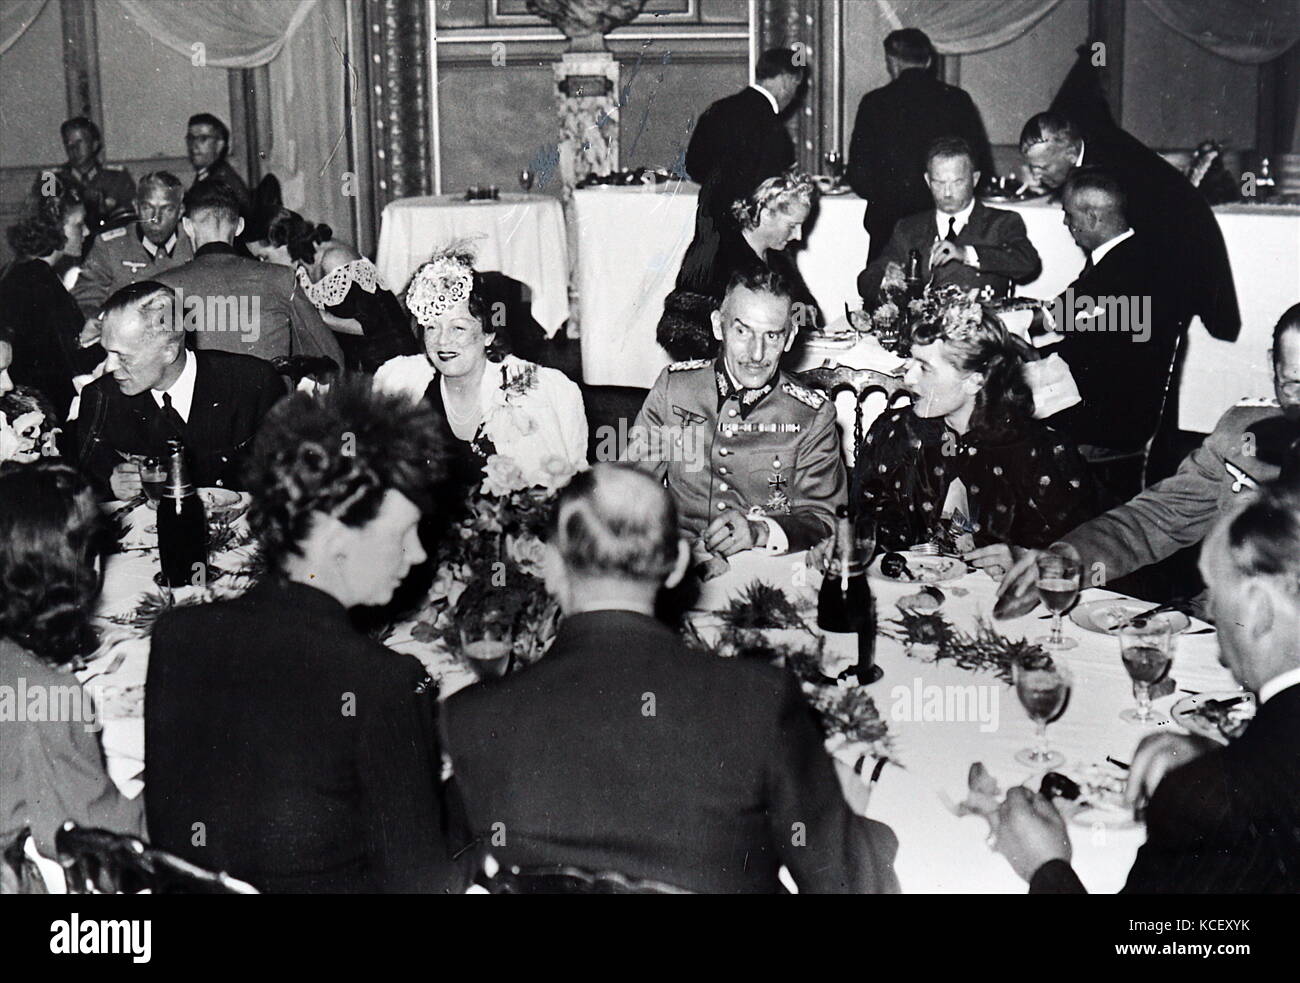 Foto von carl-heinrich von Stülpnagel Abendessen an der Pariser Oper. Carl-Heinrich von Stülpnagel (1886-1944), deutscher General und Befehlshaber der Deutschen besetzten Frankreich. Vom 20. Jahrhundert Stockfoto